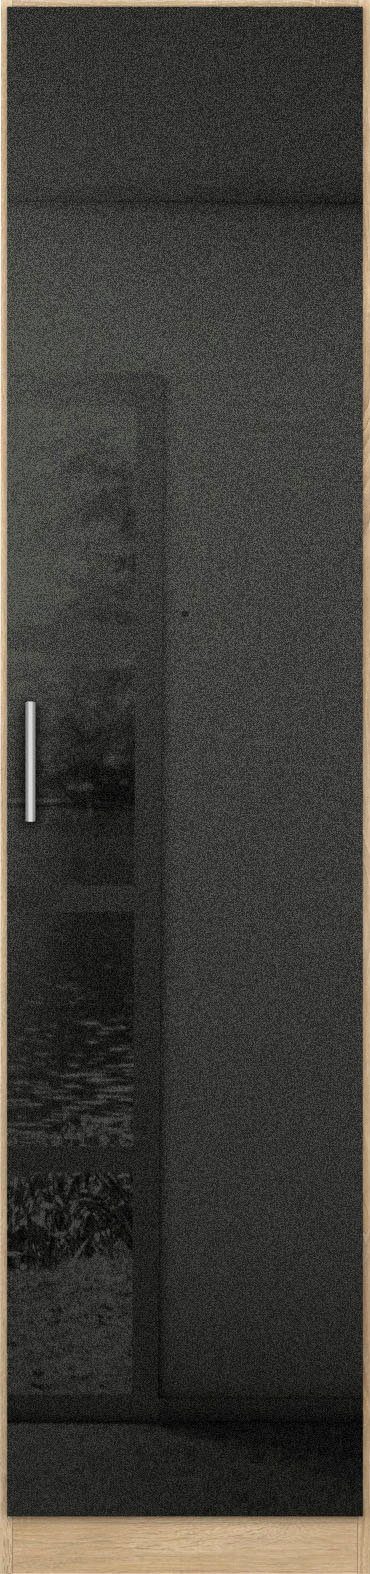 Celle grau Drehtürenschrank rauch struktureichefarben hell/Hochglanz